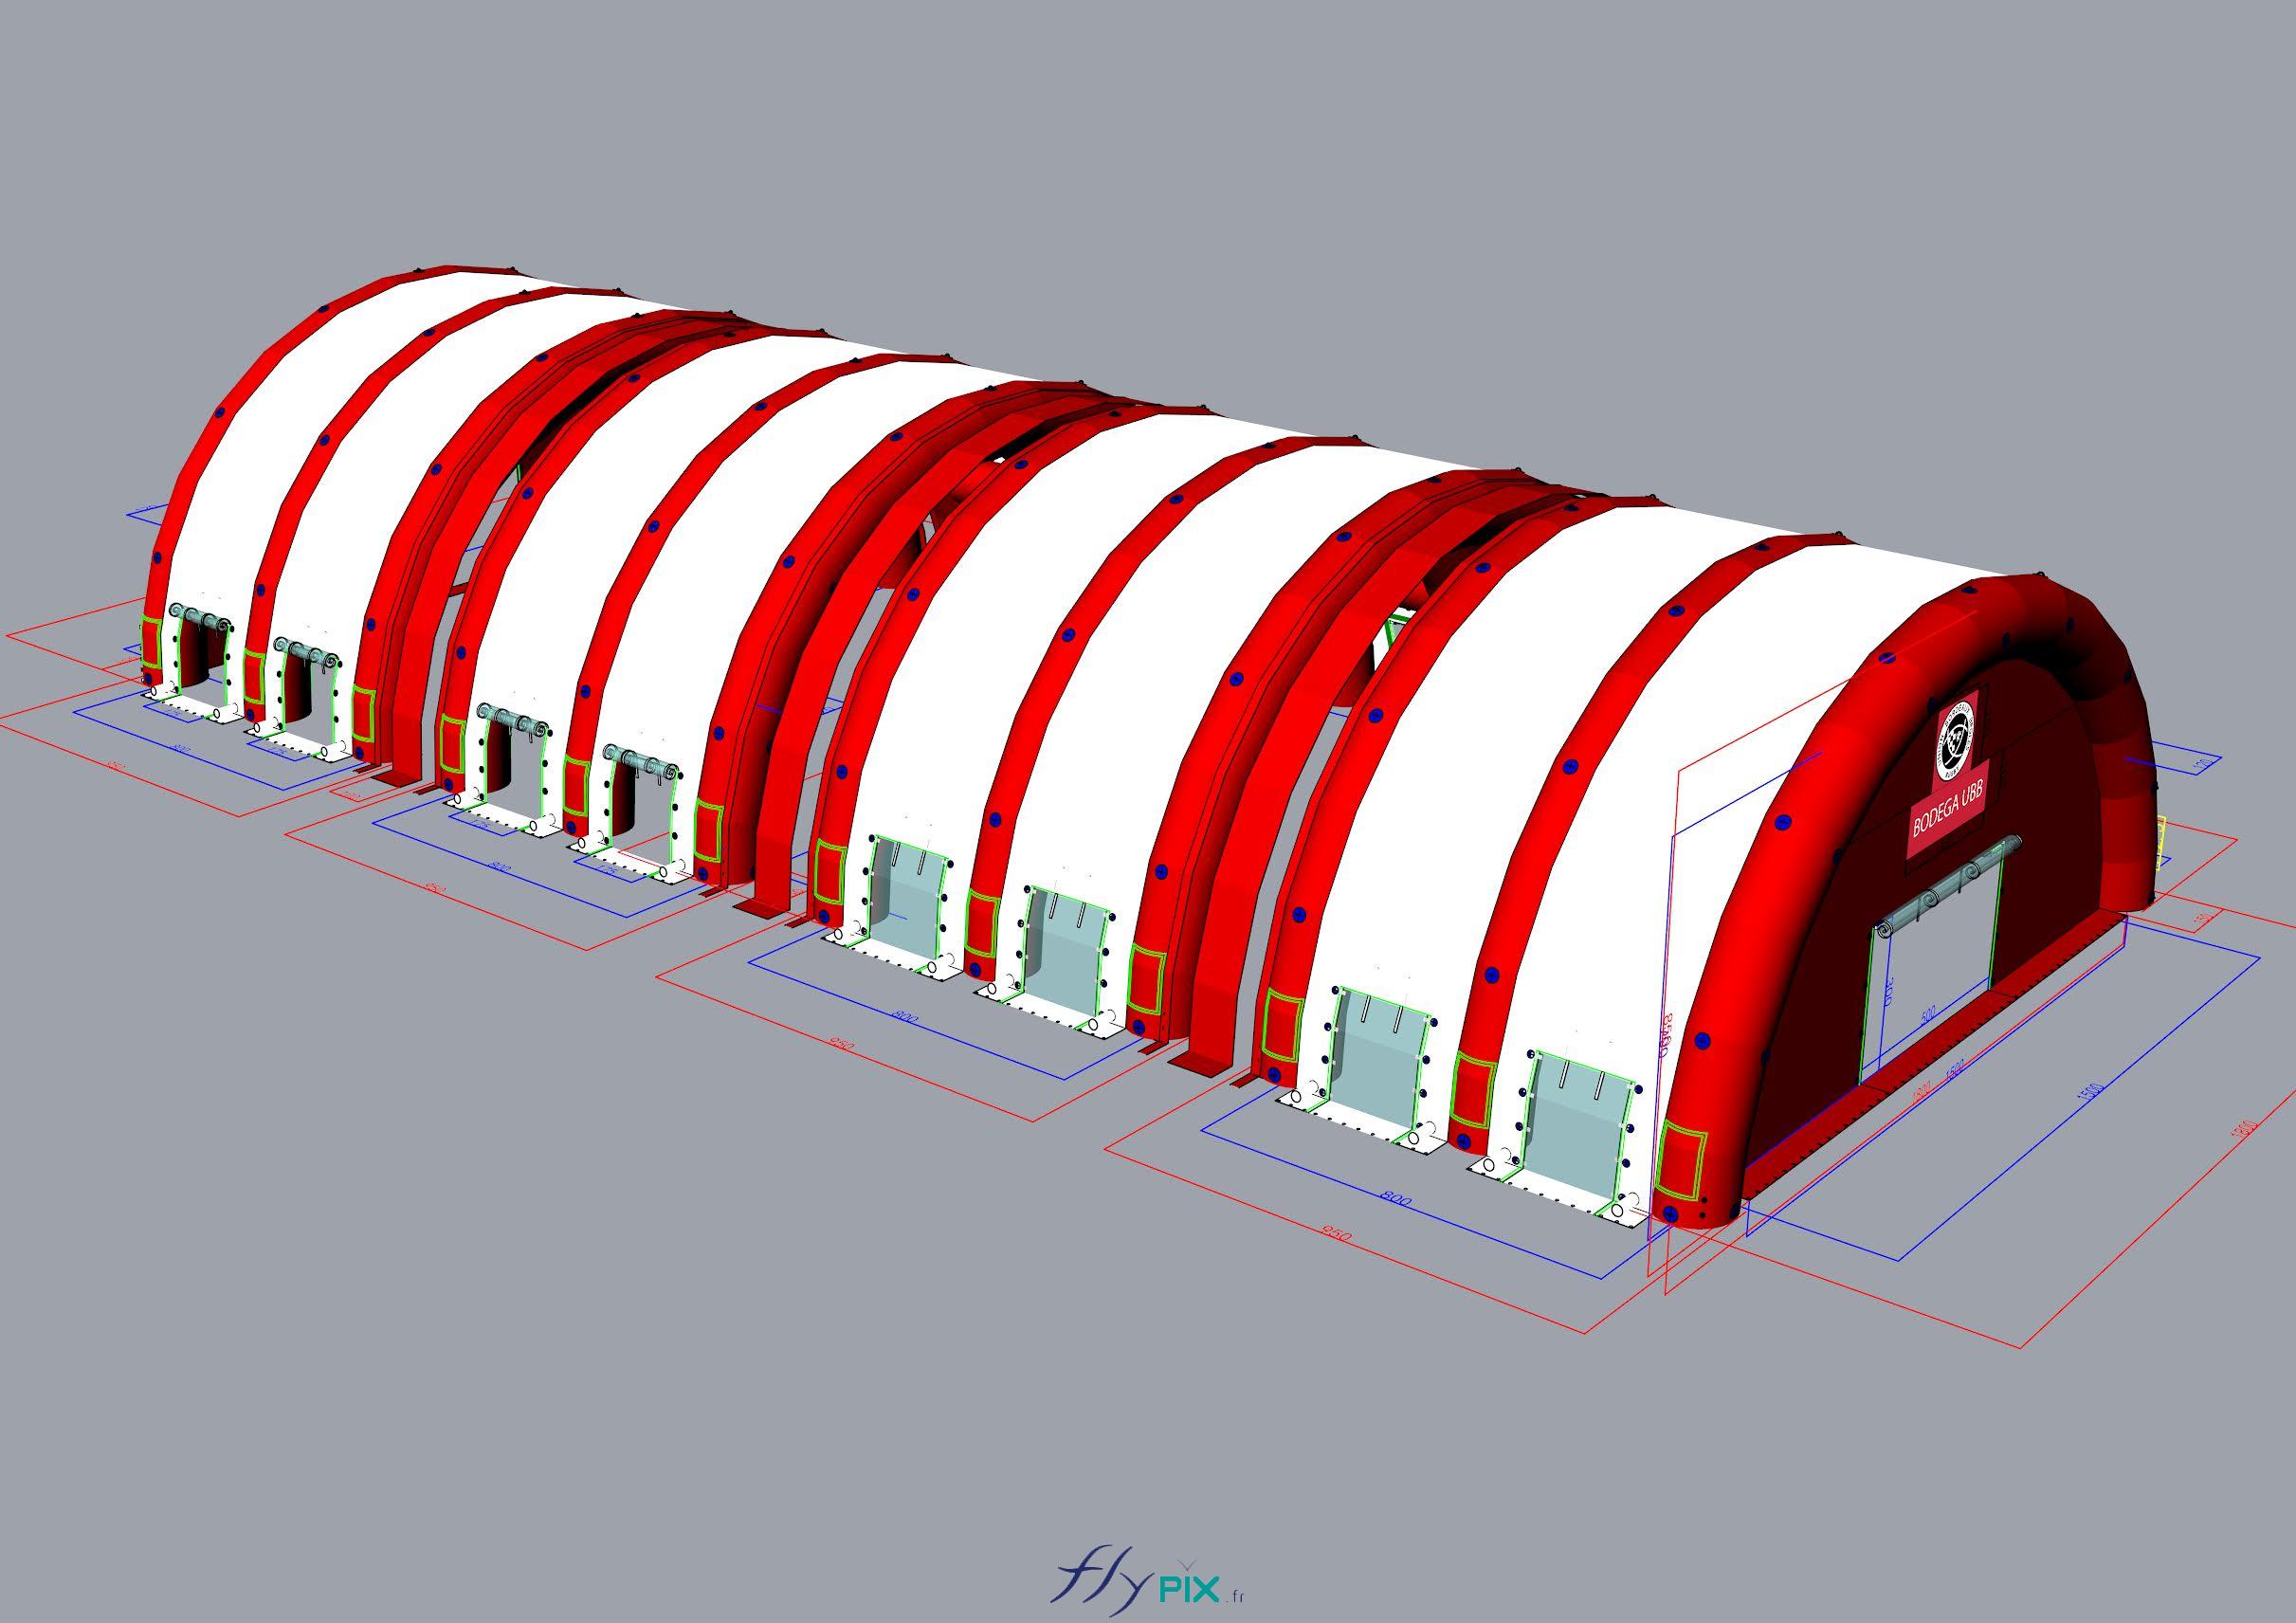 FLYPIX Etude modelisation 3D infographie conception tente reception public air captif tunnel pompe regulateur pression enveloppe PVC 06mm simple peau UNION BORDEAUX BELGES 15